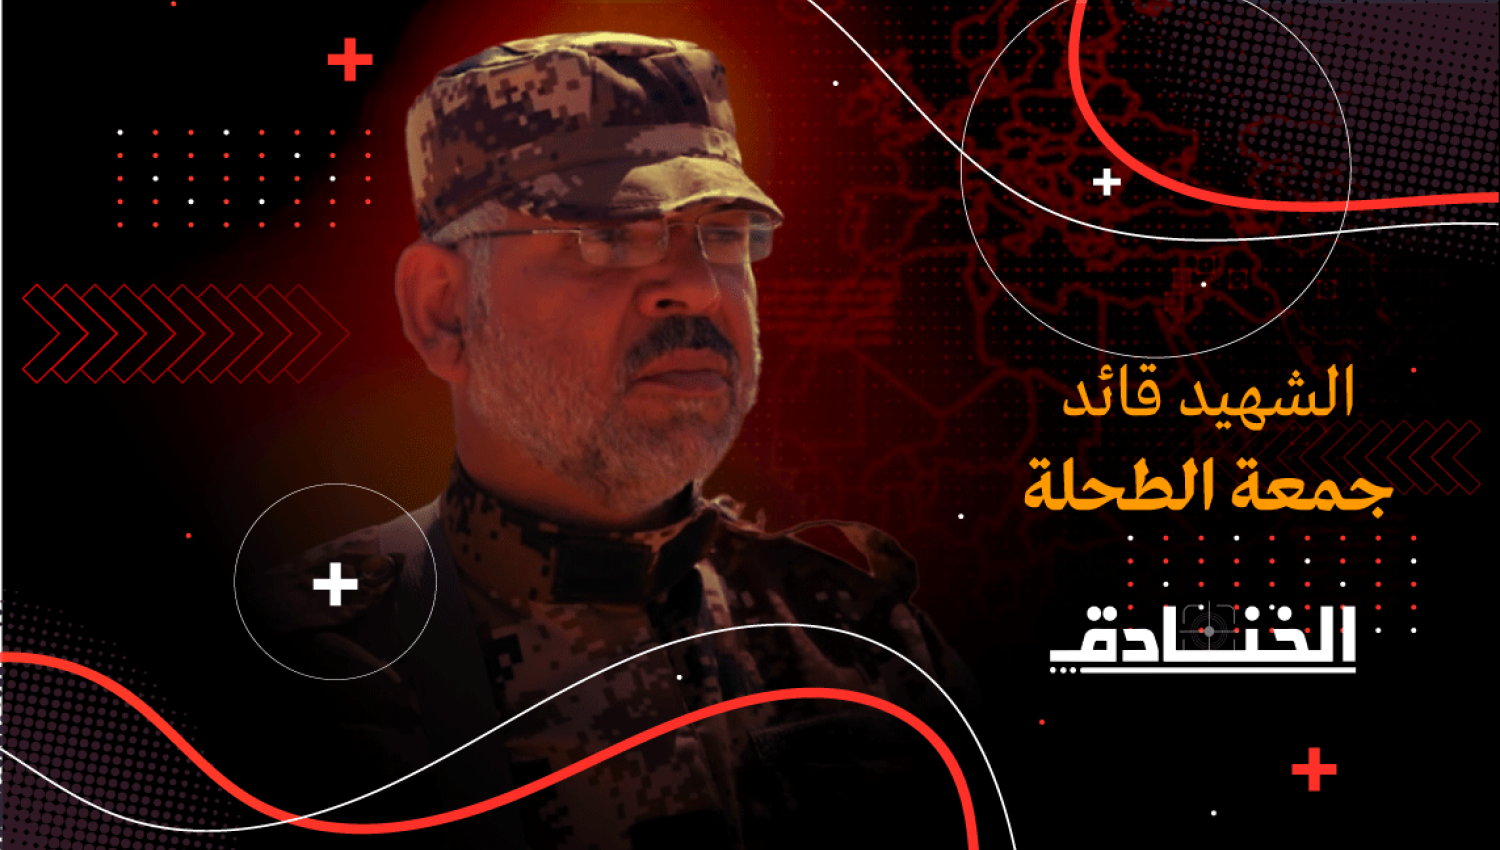 الشهيد جمعة الطحلة: قائد في الأمن السيبراني والحرب الالكترونية في "القسام"